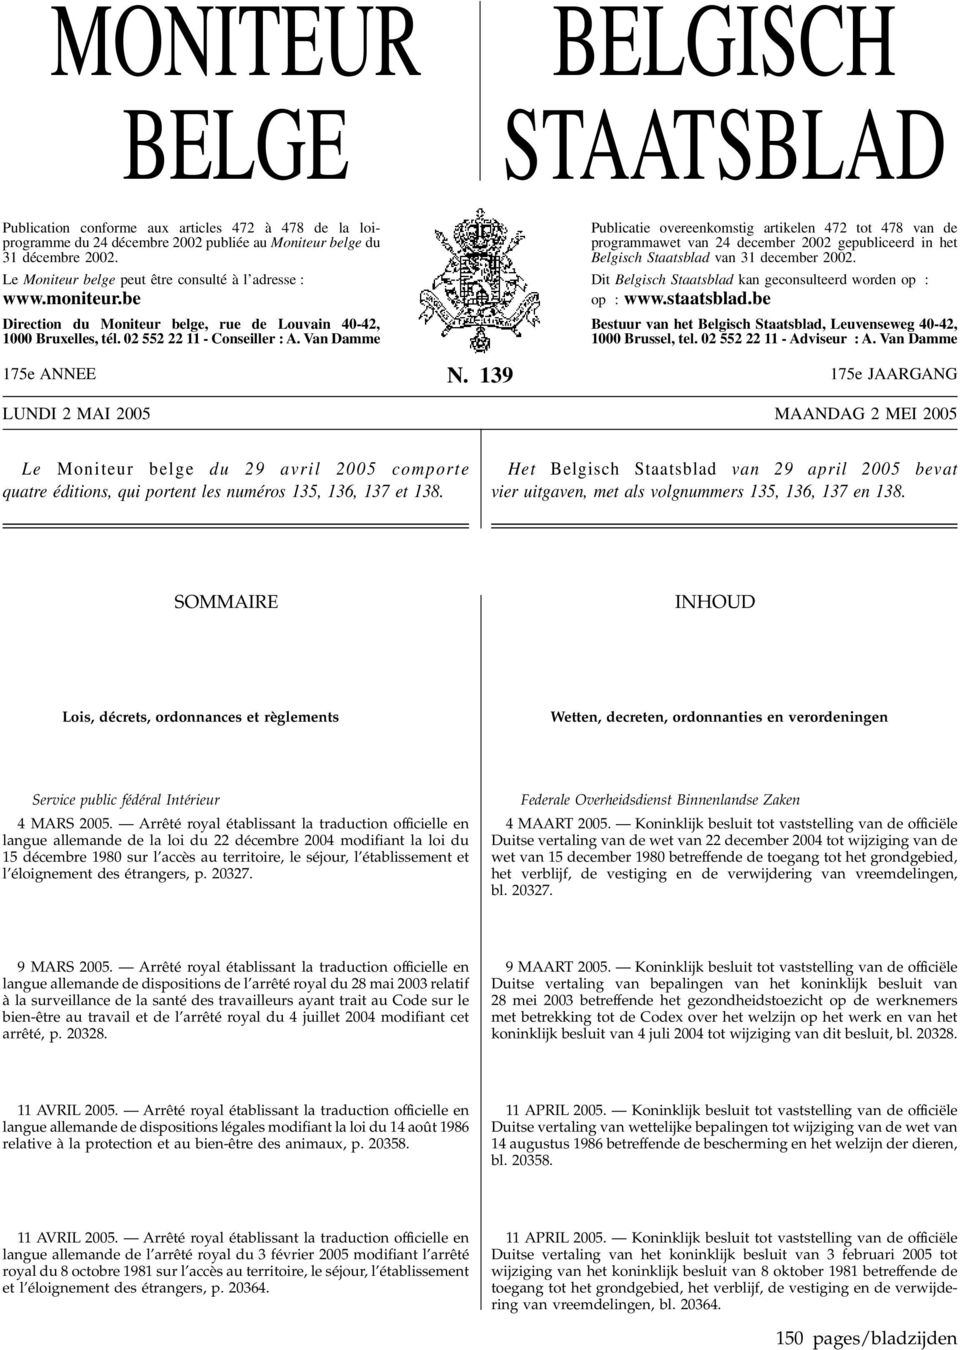 Van Damme Publicatie overeenkomstig artikelen 472 tot 478 van de programmawet van 24 december 2002 gepubliceerd in het Belgisch Staatsblad van 31 december 2002.